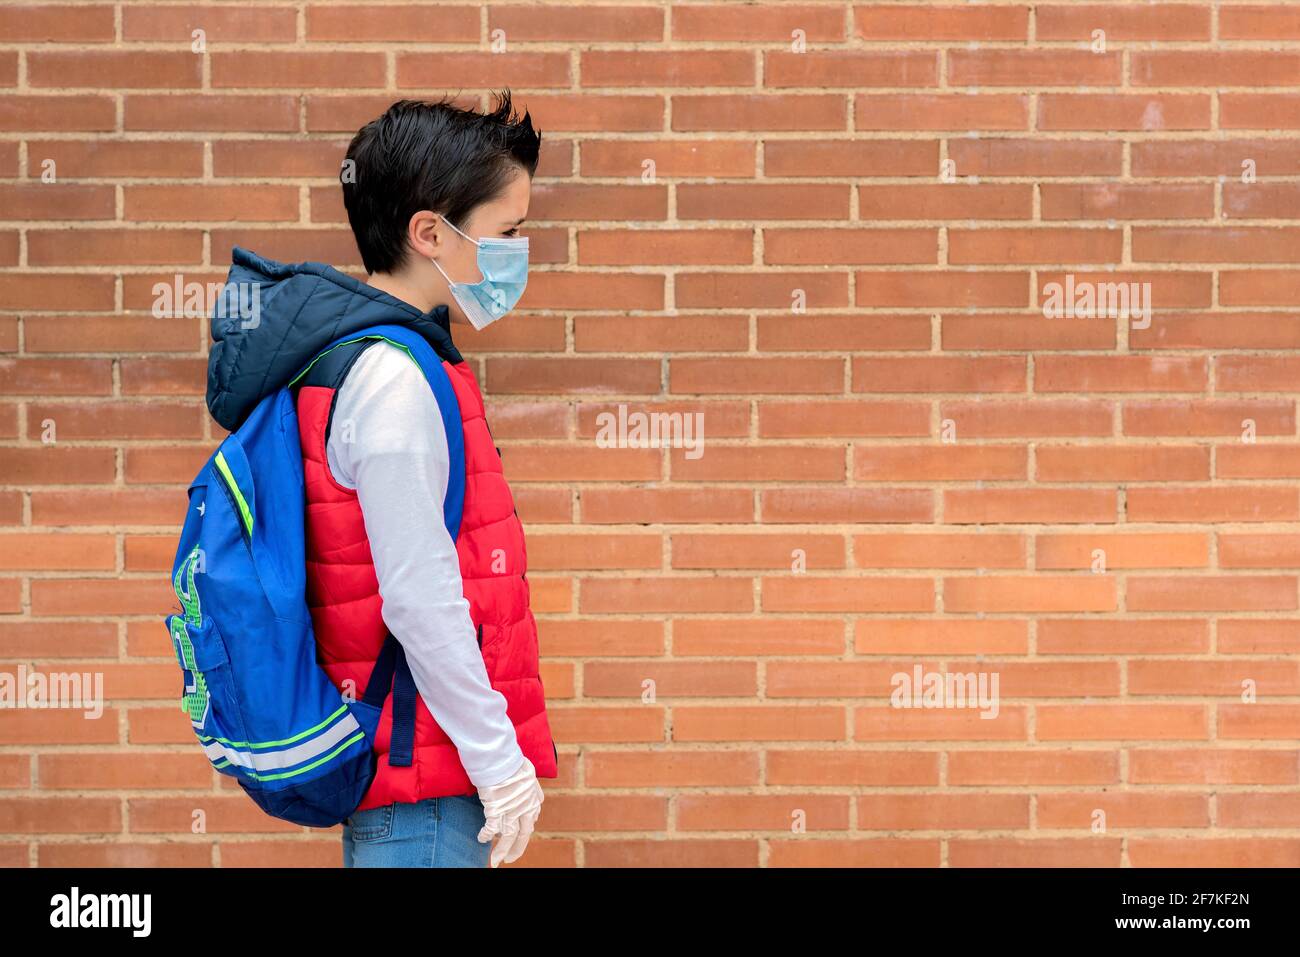 bambino triste e penoso con maschera chirurgica protettiva e zaino andare a scuola all'aperto Foto Stock